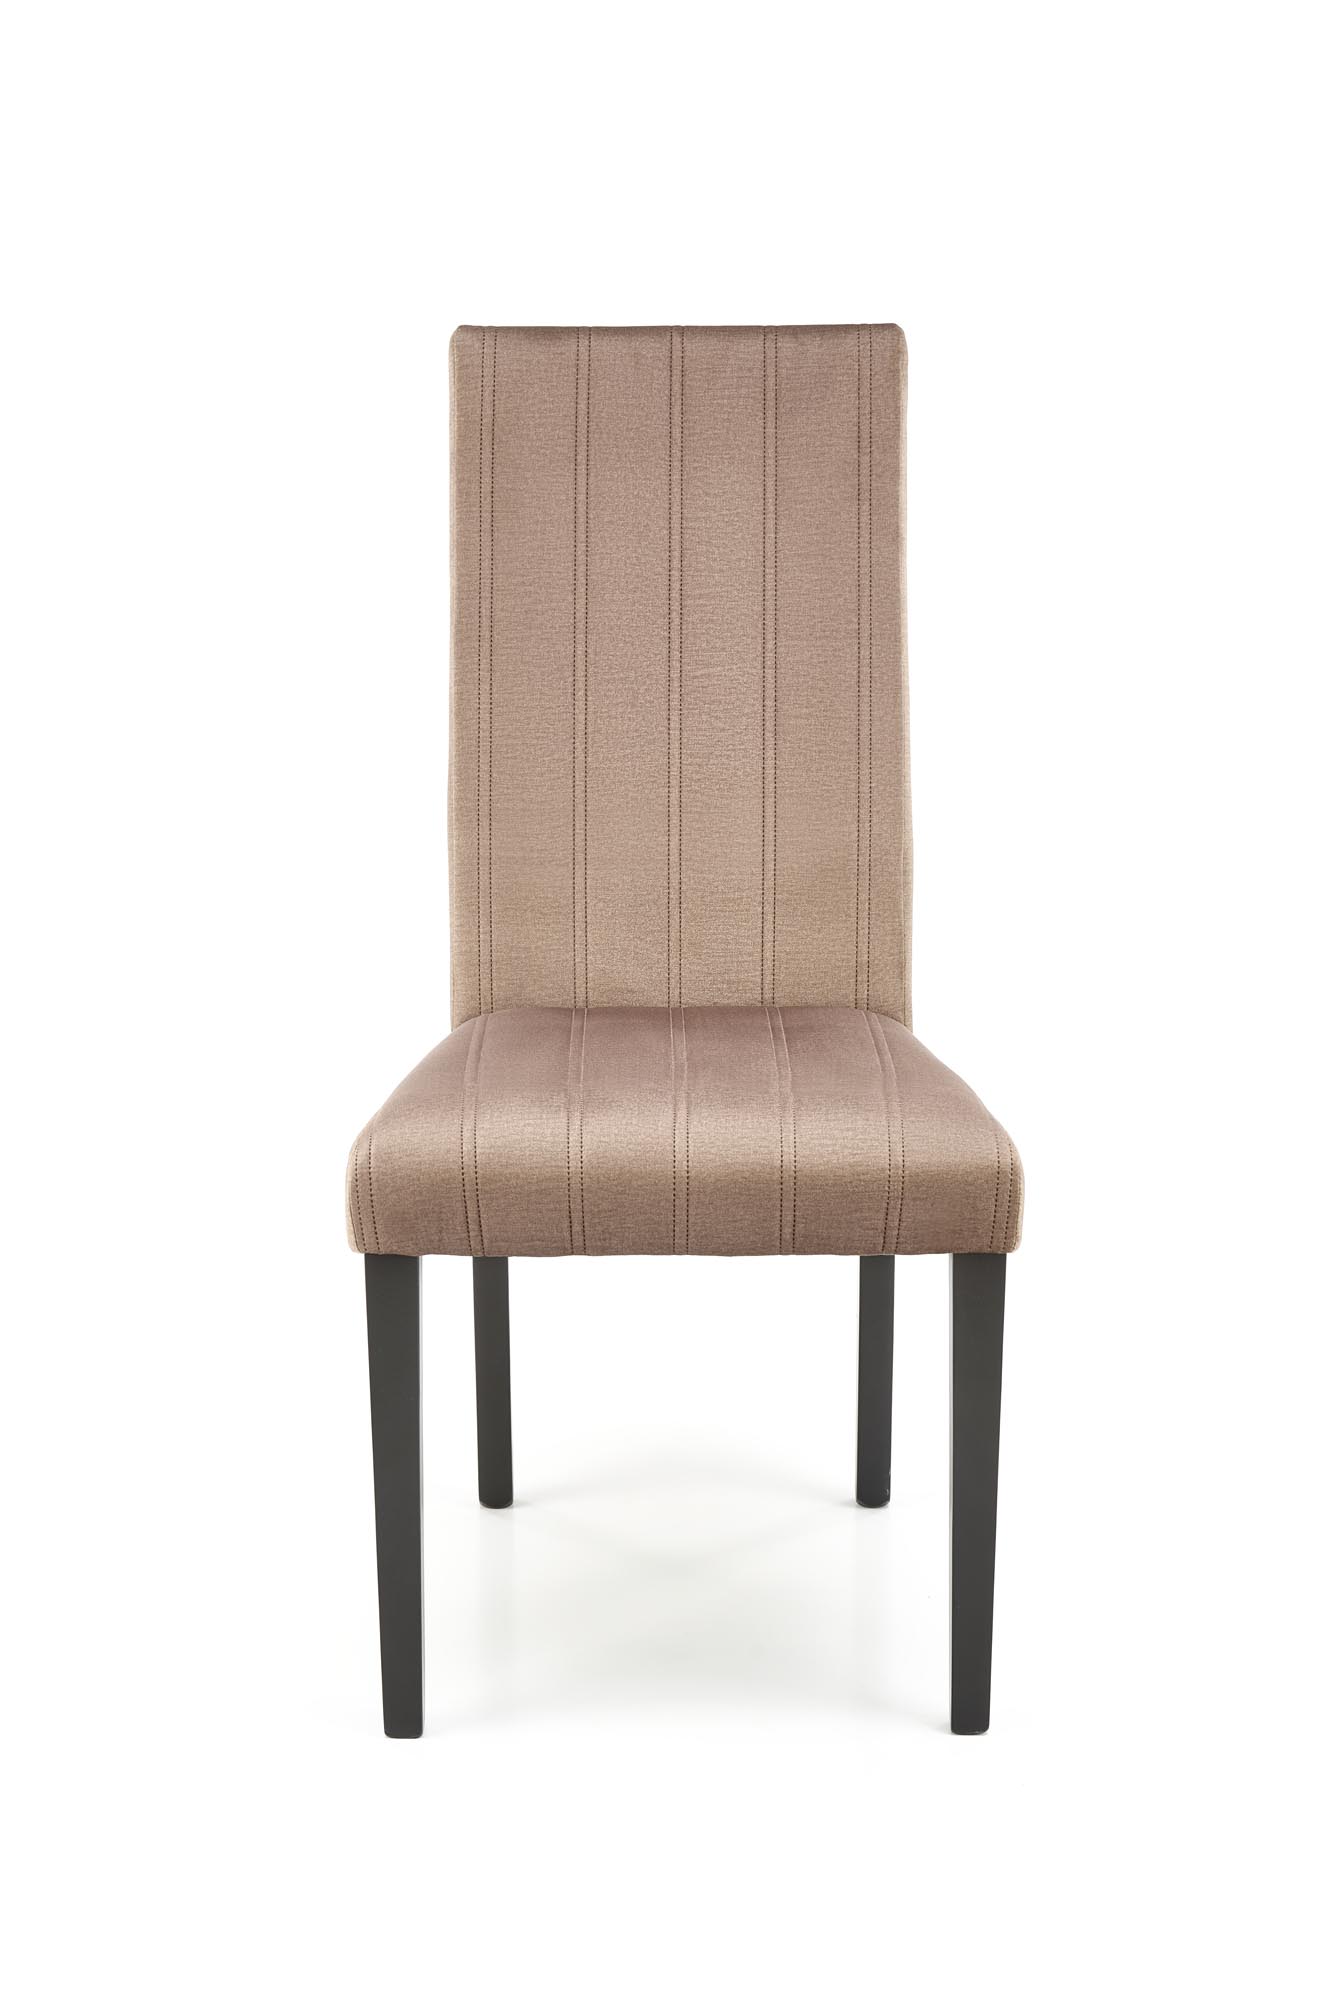 Krzesło tapicerowane Diego 2 - czarny / beż krzesło tapicerowane diego 2 - czarny / beż